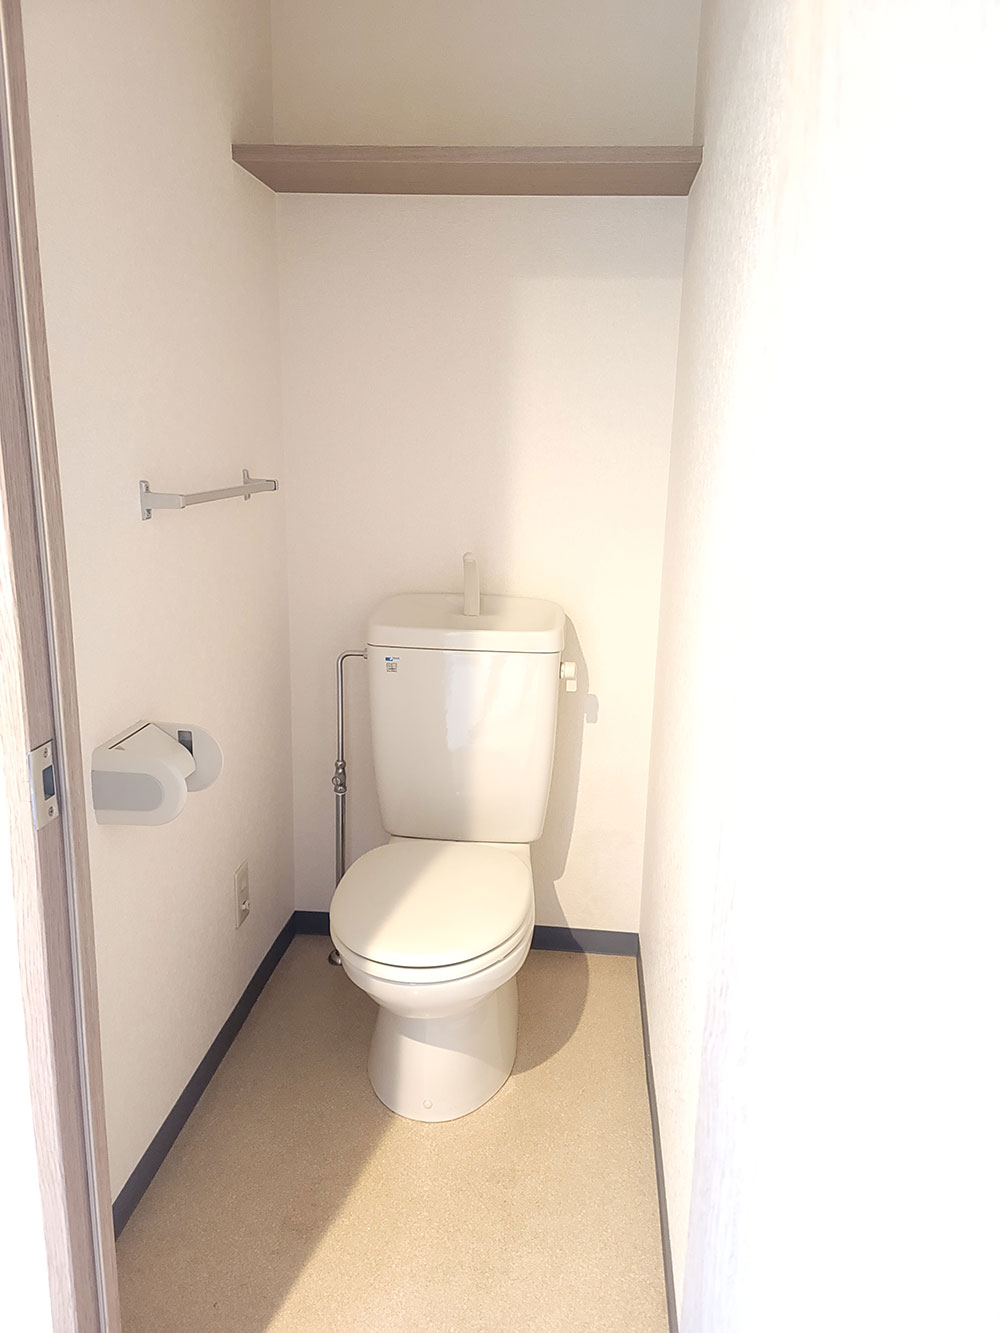 アソシエイト呉服町の一室のトイレ